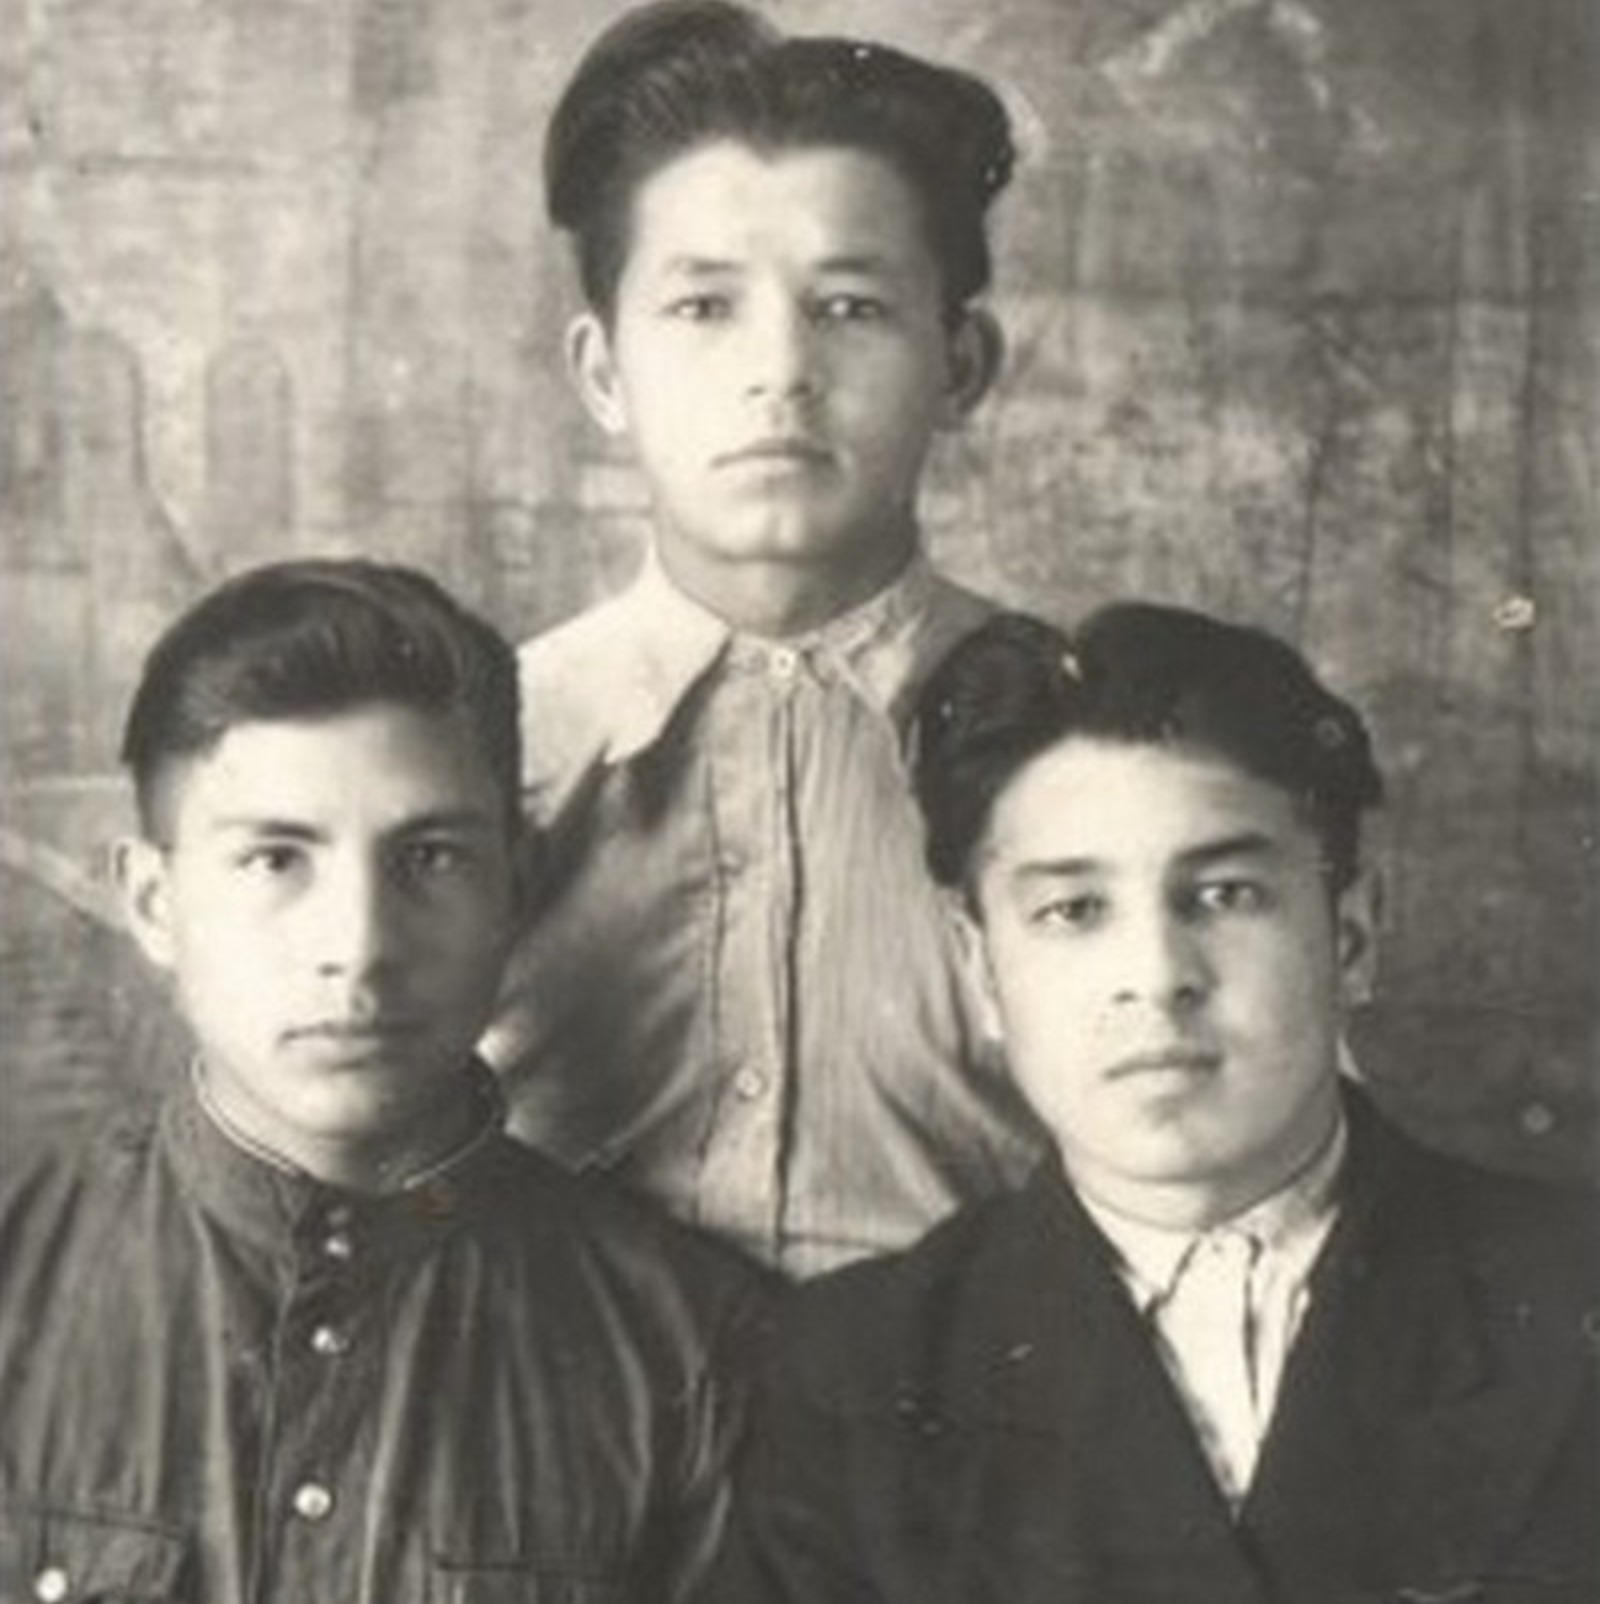 Мои школьные друзья Х. Х. Качкин, А. М. Хорунов и я. Поселок Улу-Теляк Иглинского района. 1951 г.